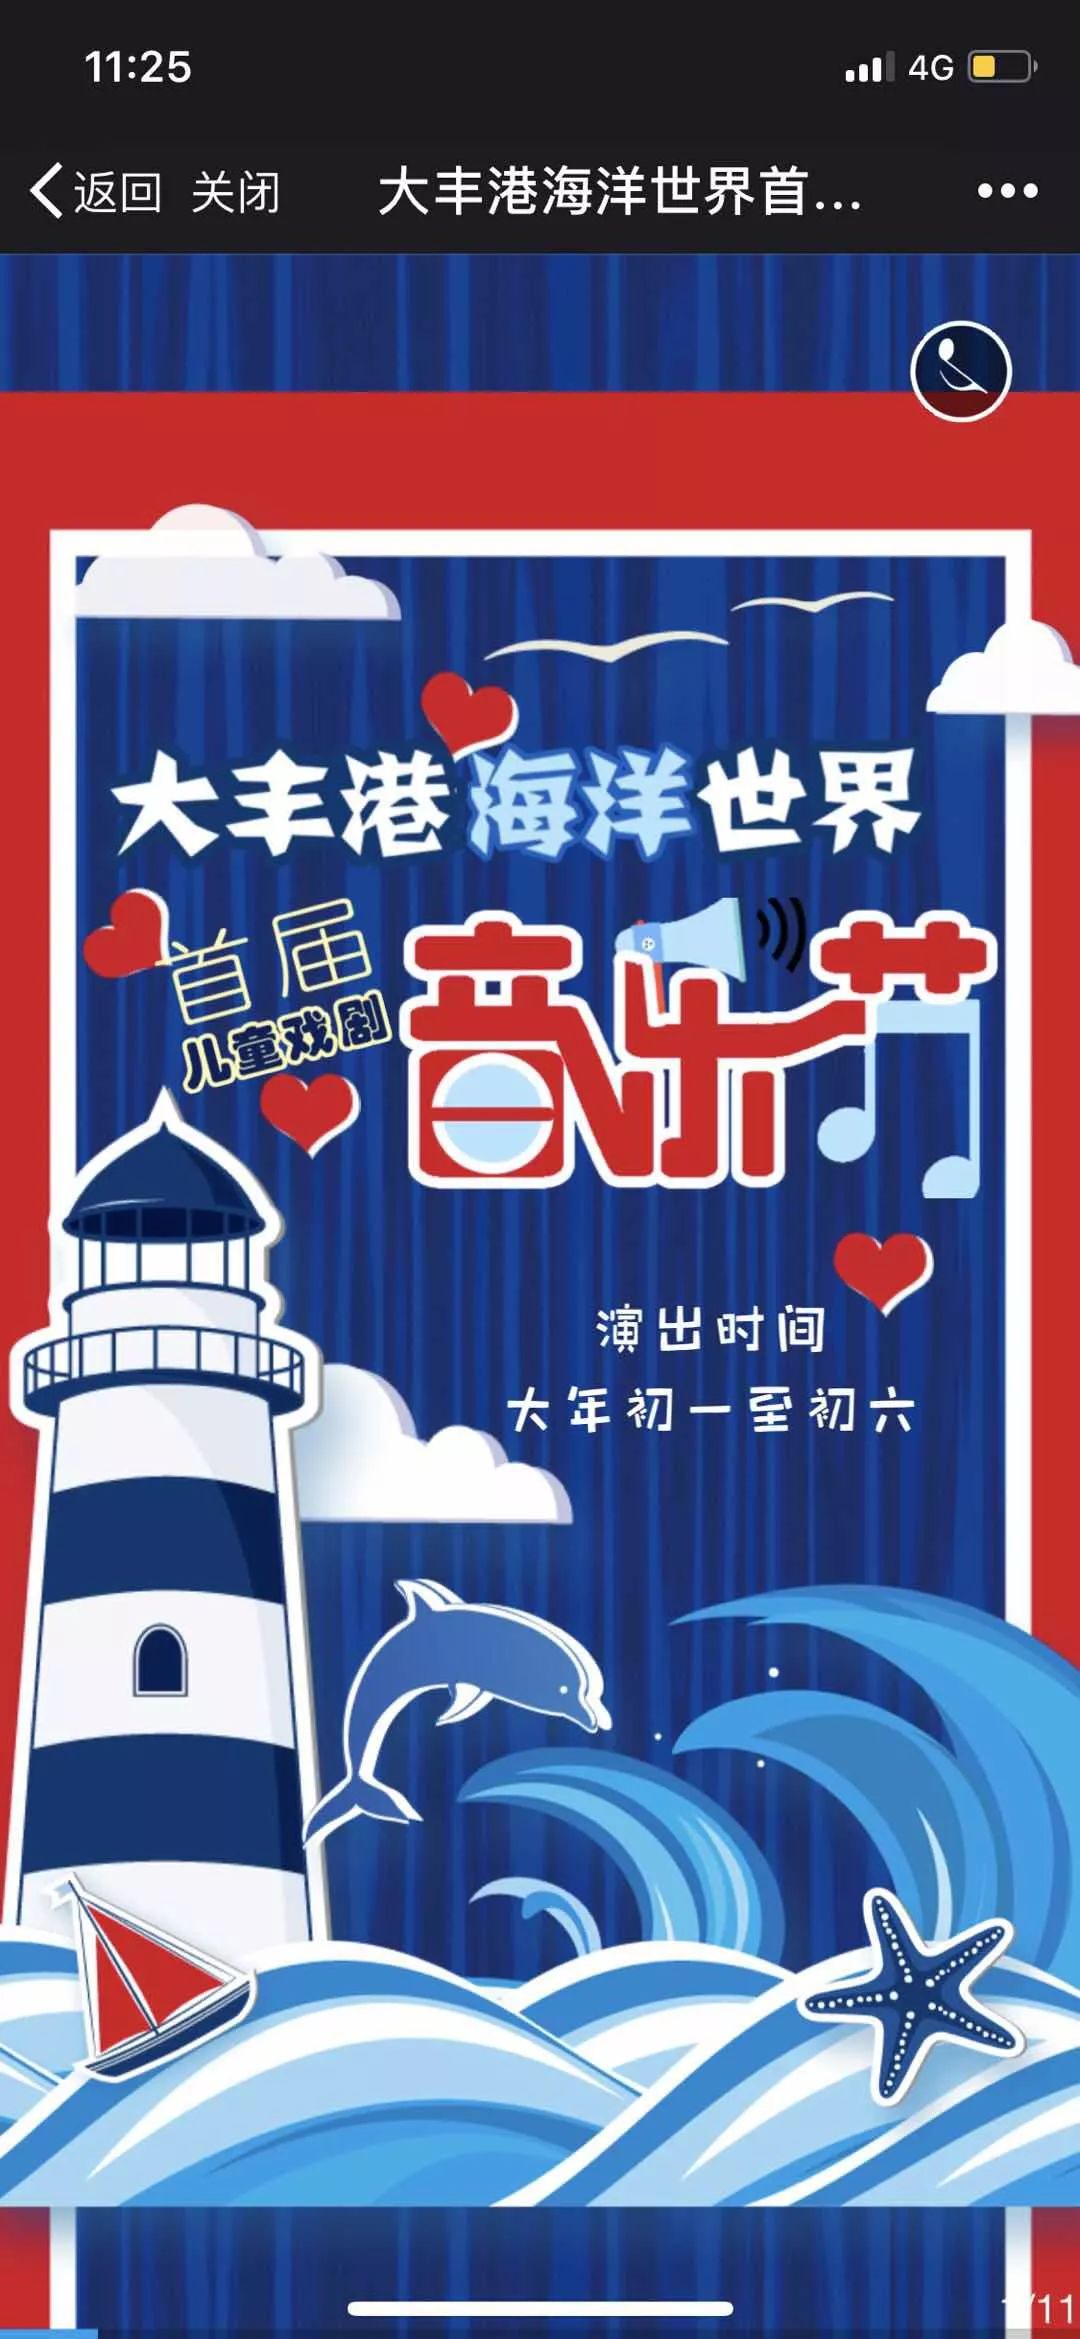 大丰港海洋世界首届儿童戏剧音乐节!